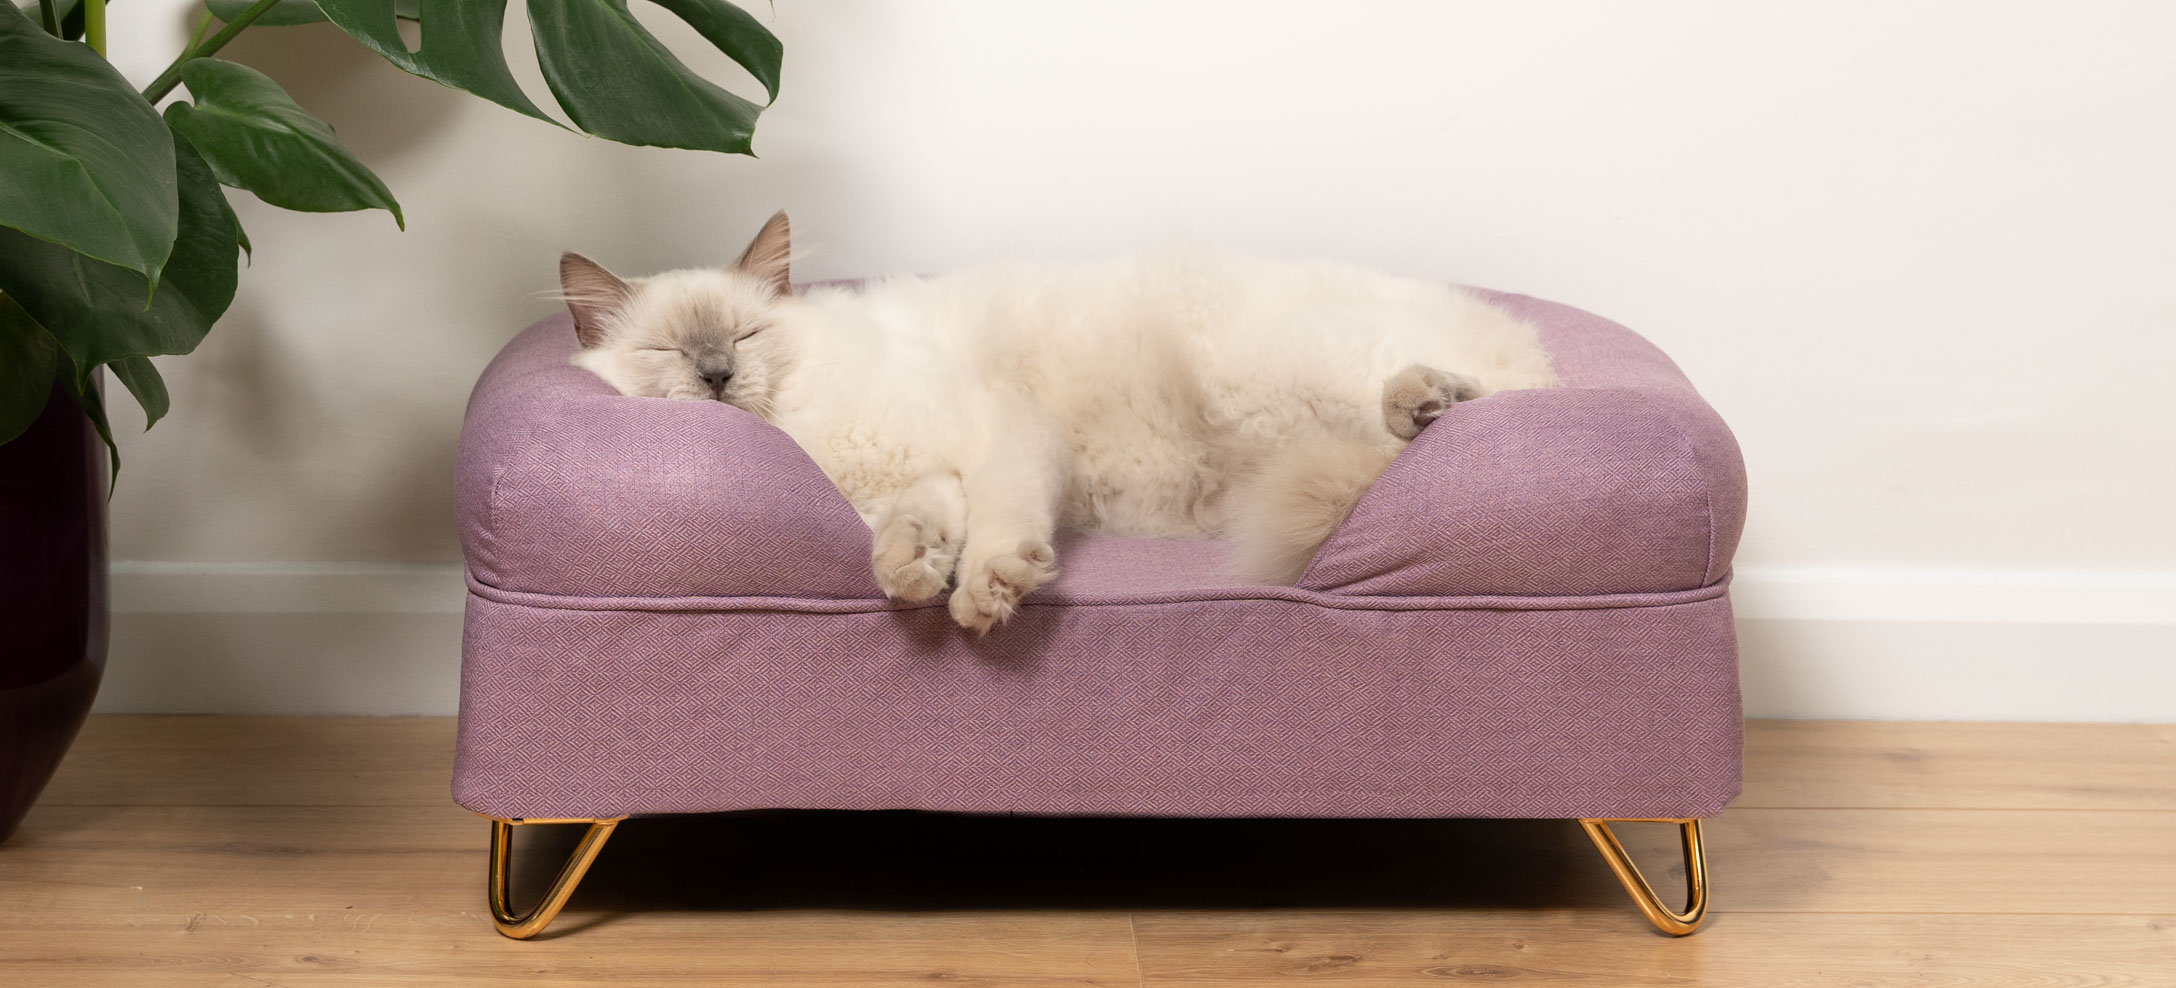 Un chat Ragdoll blanc qui dort sur un lit pour chat Bolster couleur lavande